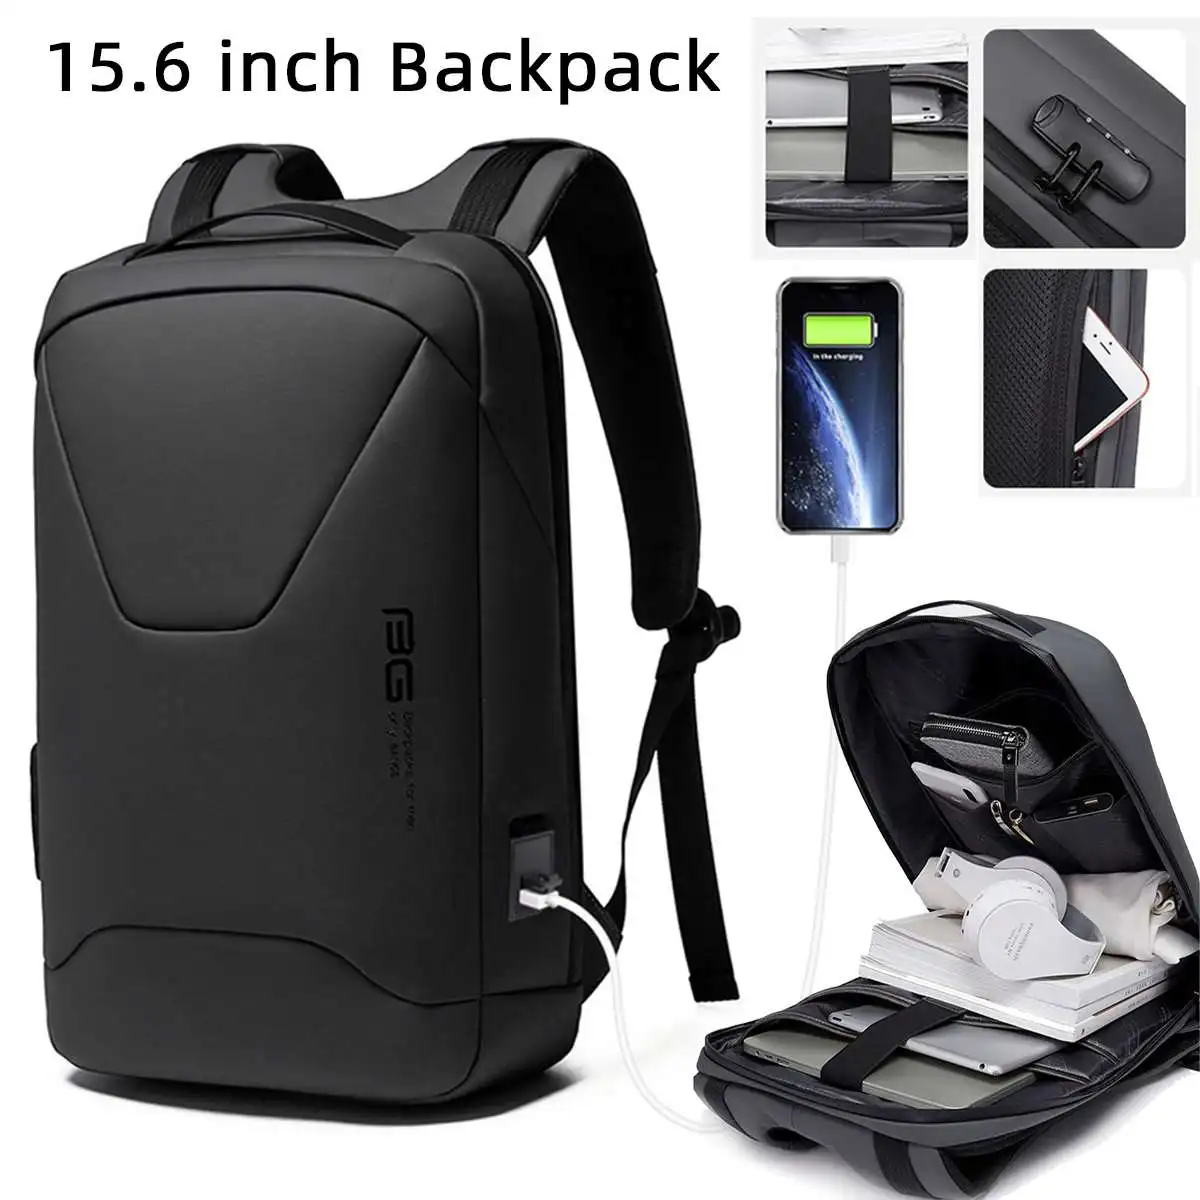 

Водонепроницаемый рюкзак BANGE для мужчин, многофункциональная спортивная сумка для ноутбука 14 дюймов, с USB-интерфейсом и защитой от кражи, су...